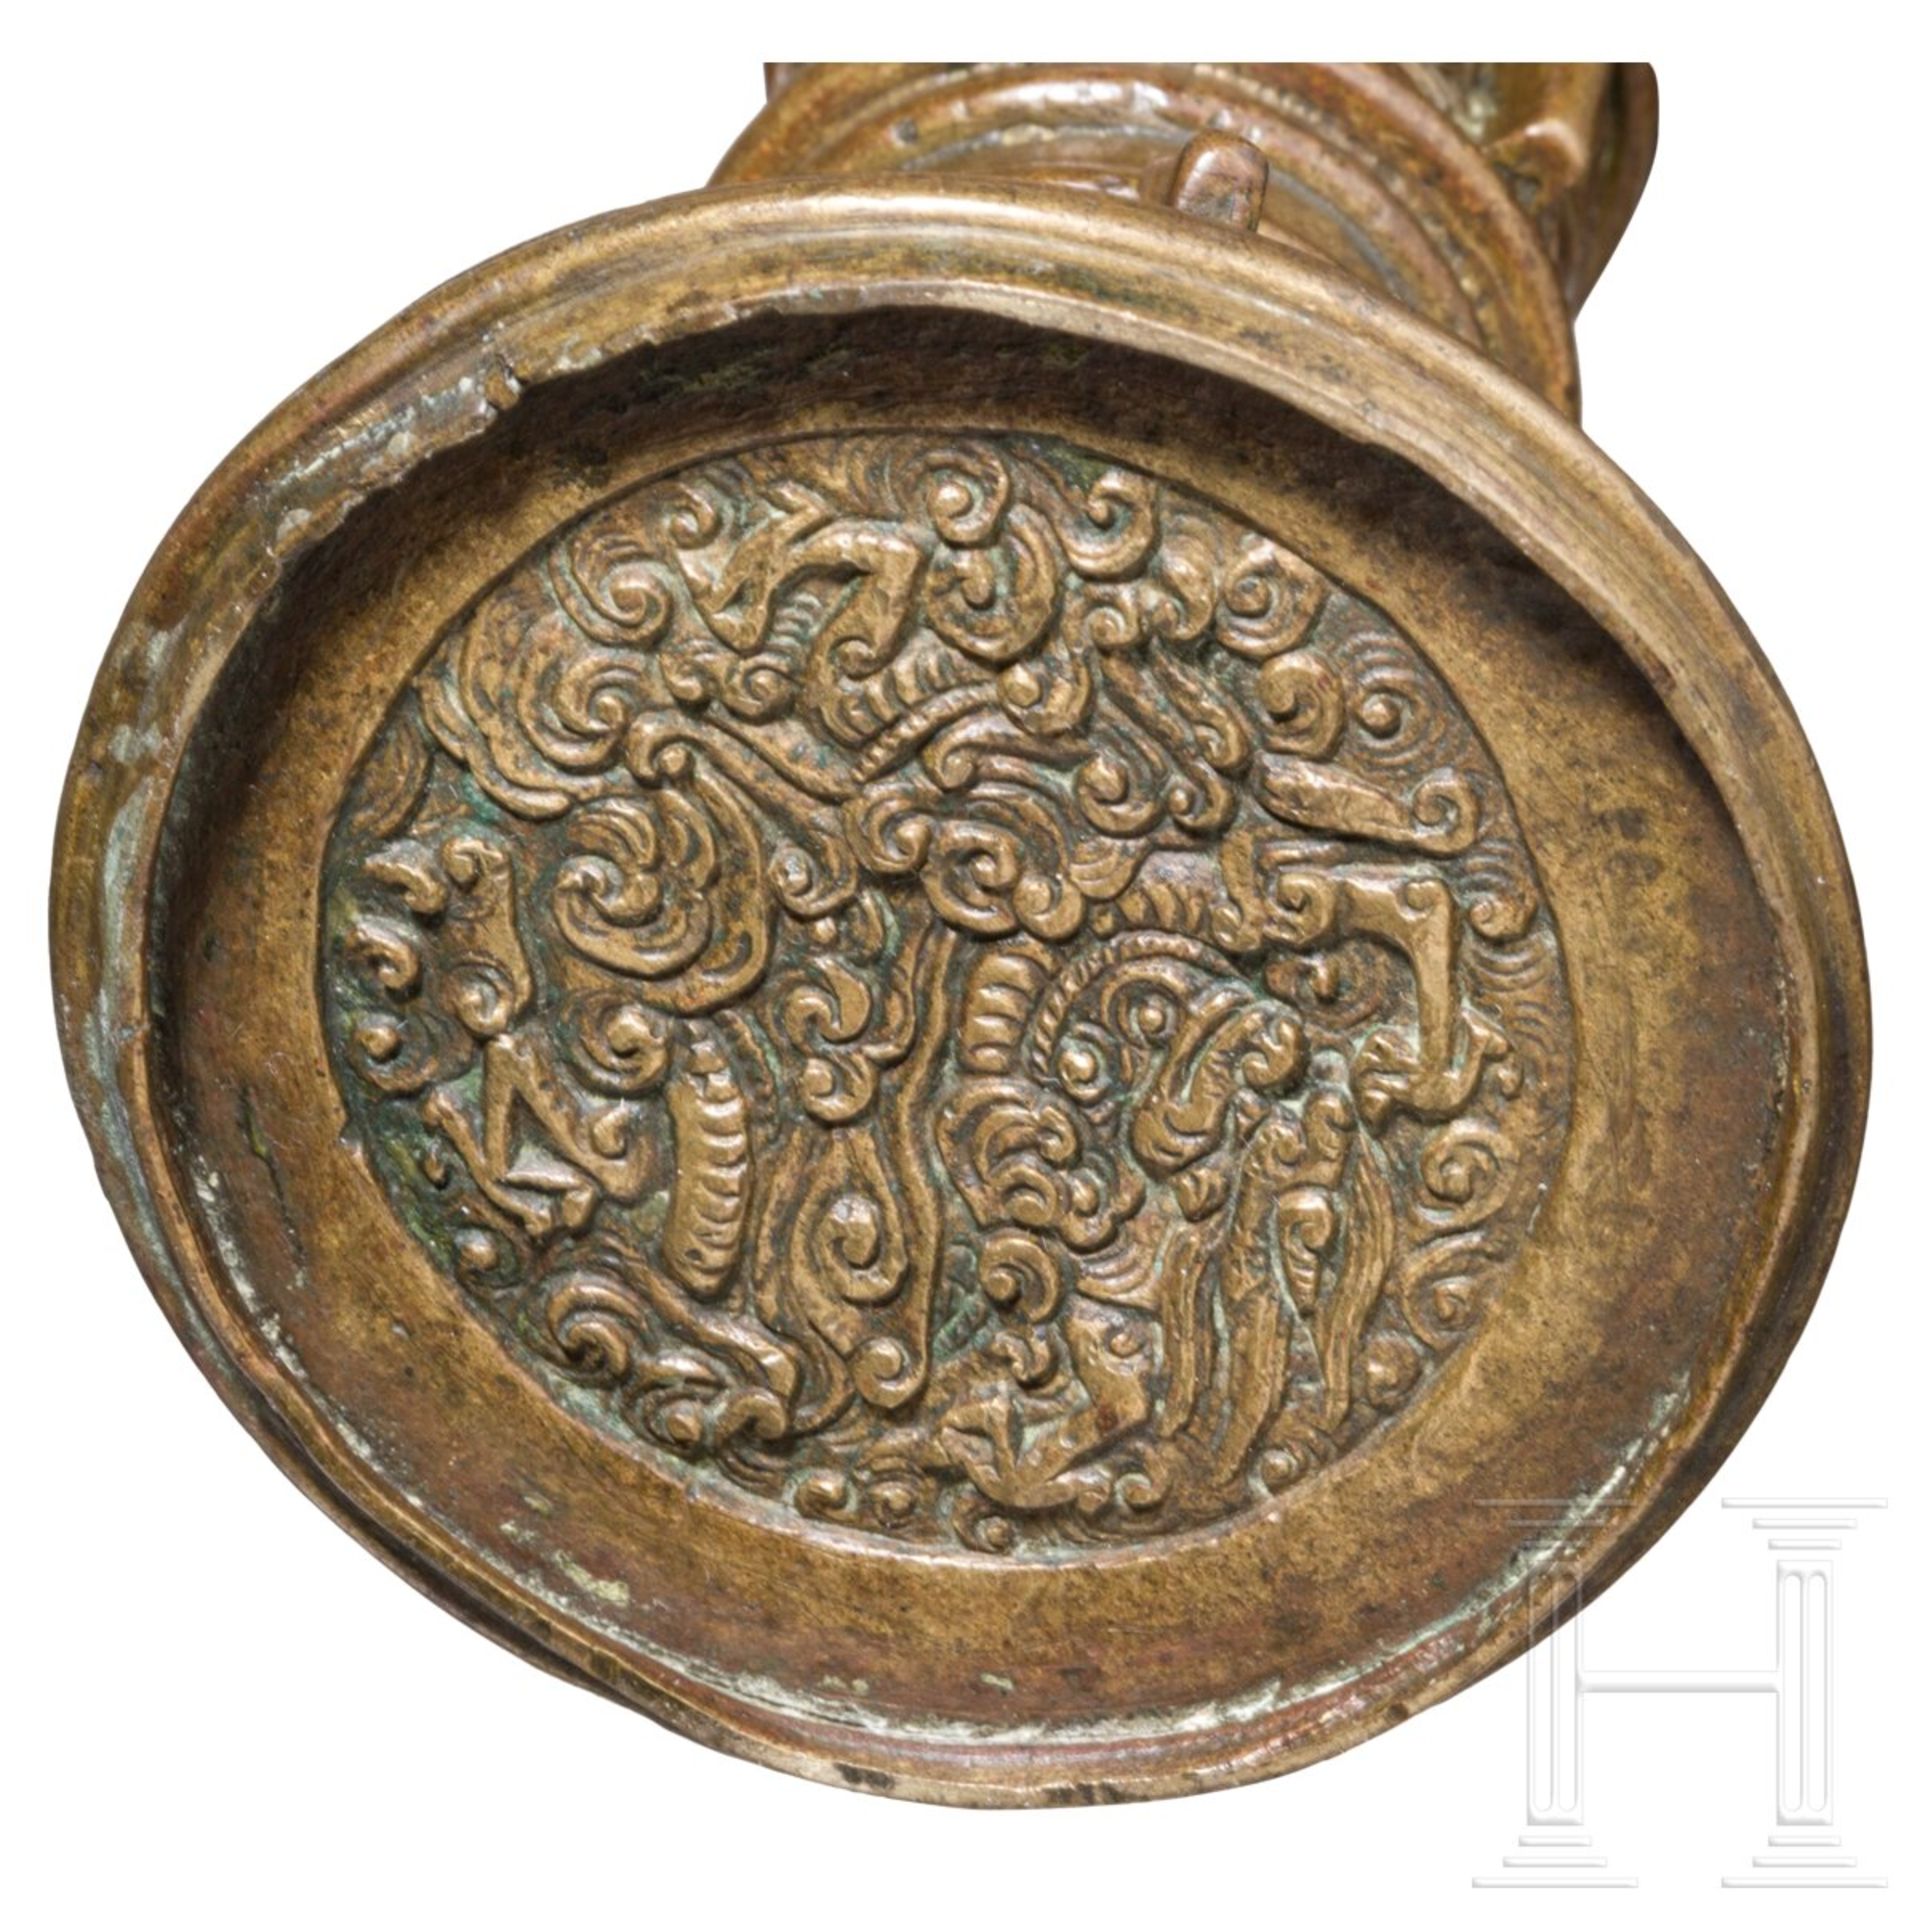 Archaische Gu-Vase aus vergoldeter Bronze, China, Ming-Dynastie, 15./16. Jhdt. - Bild 3 aus 4